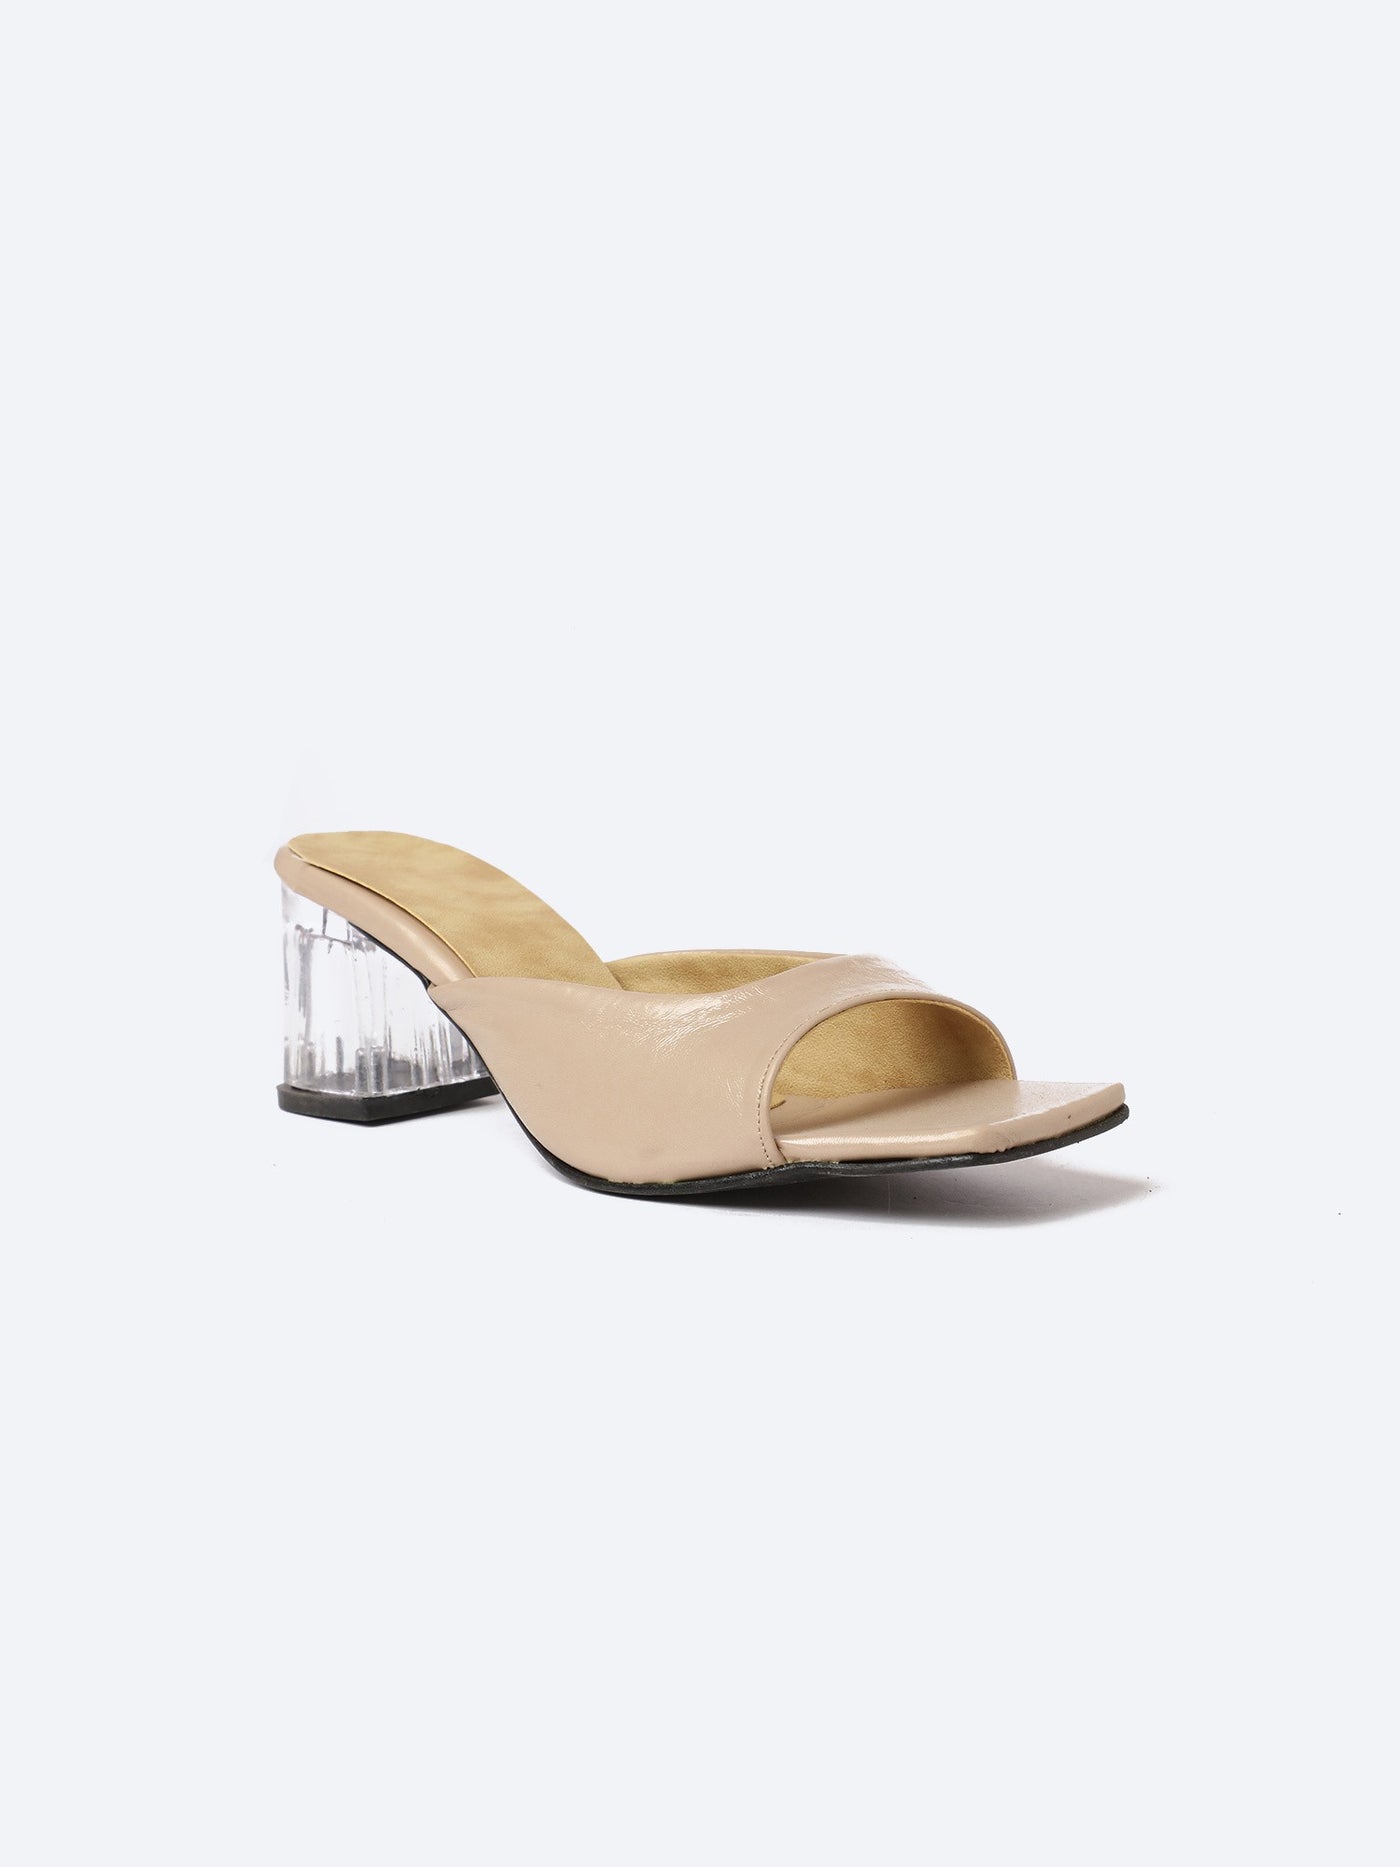 Sandals - Transparent Block Heels